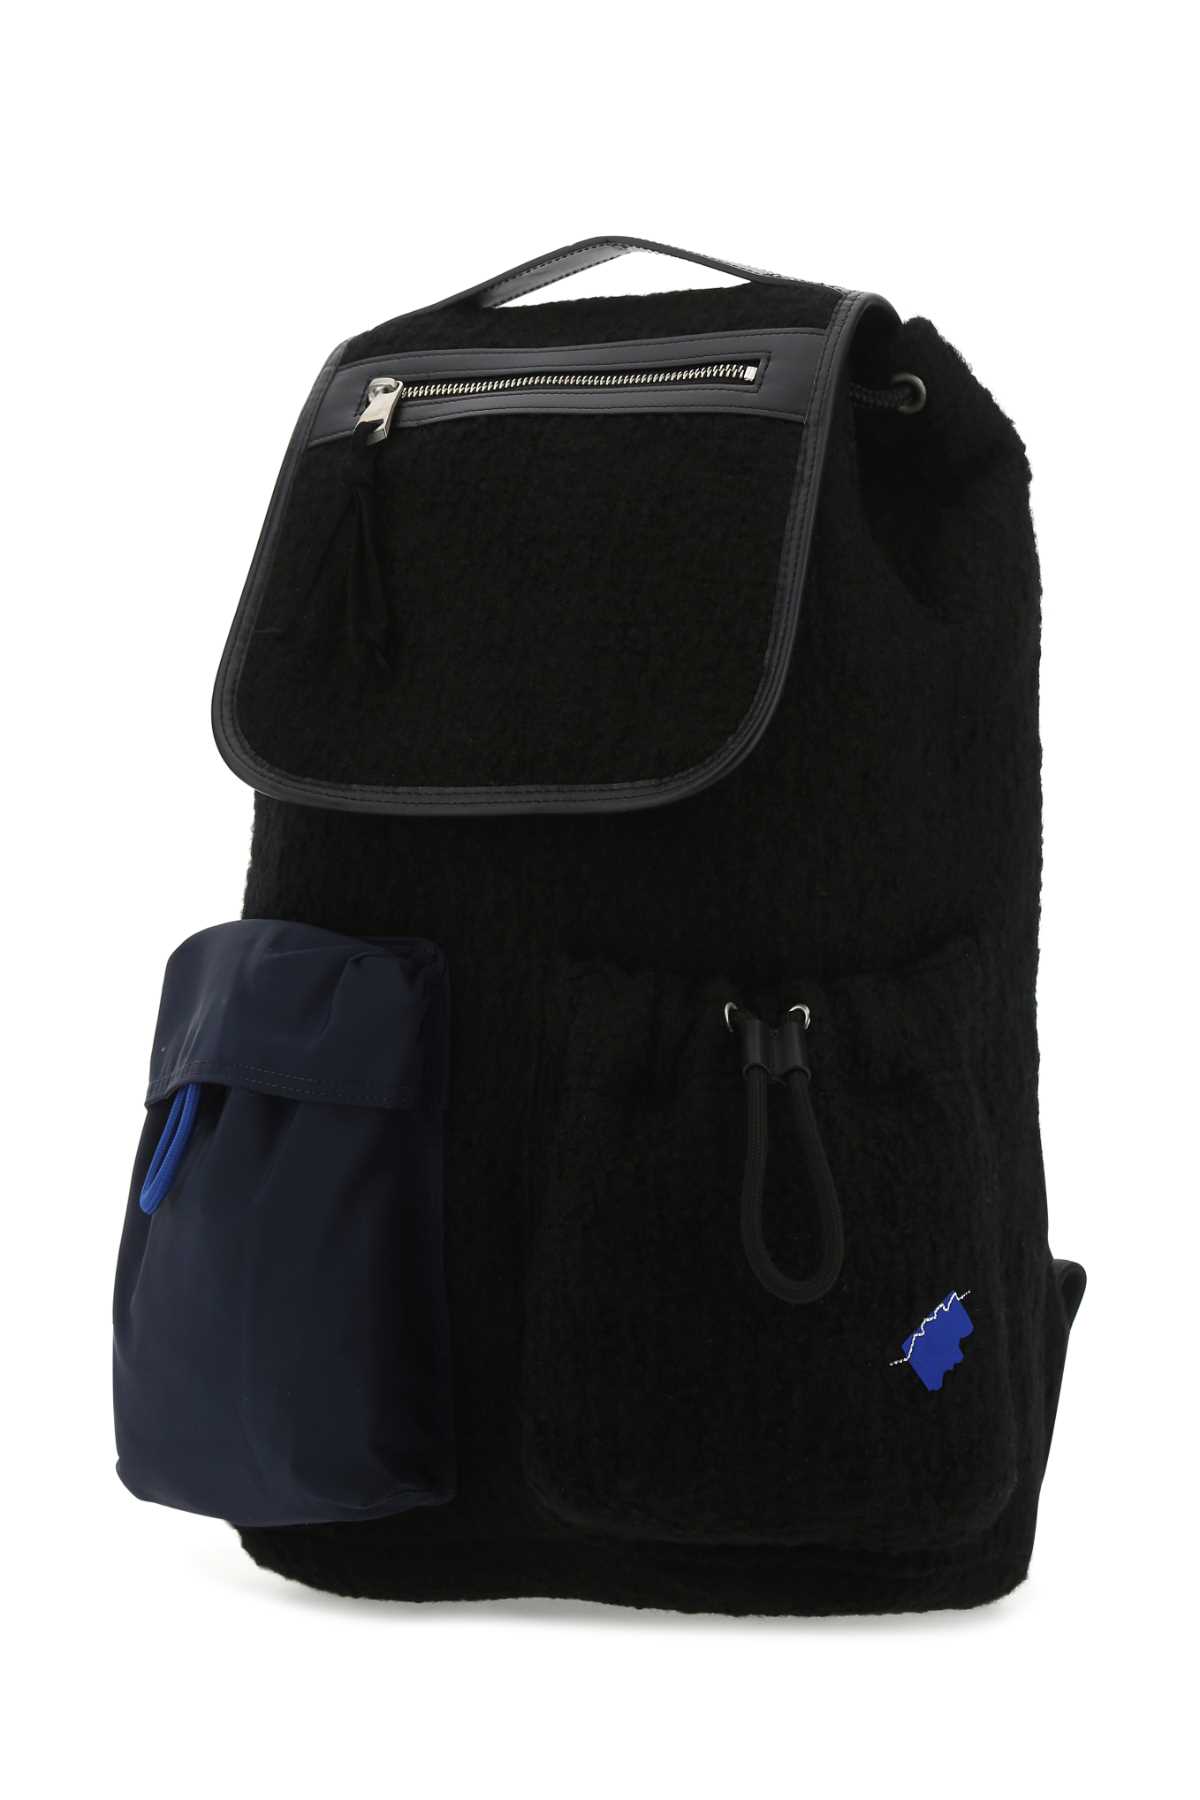 Shop Ader Error Black Boucle Backpack